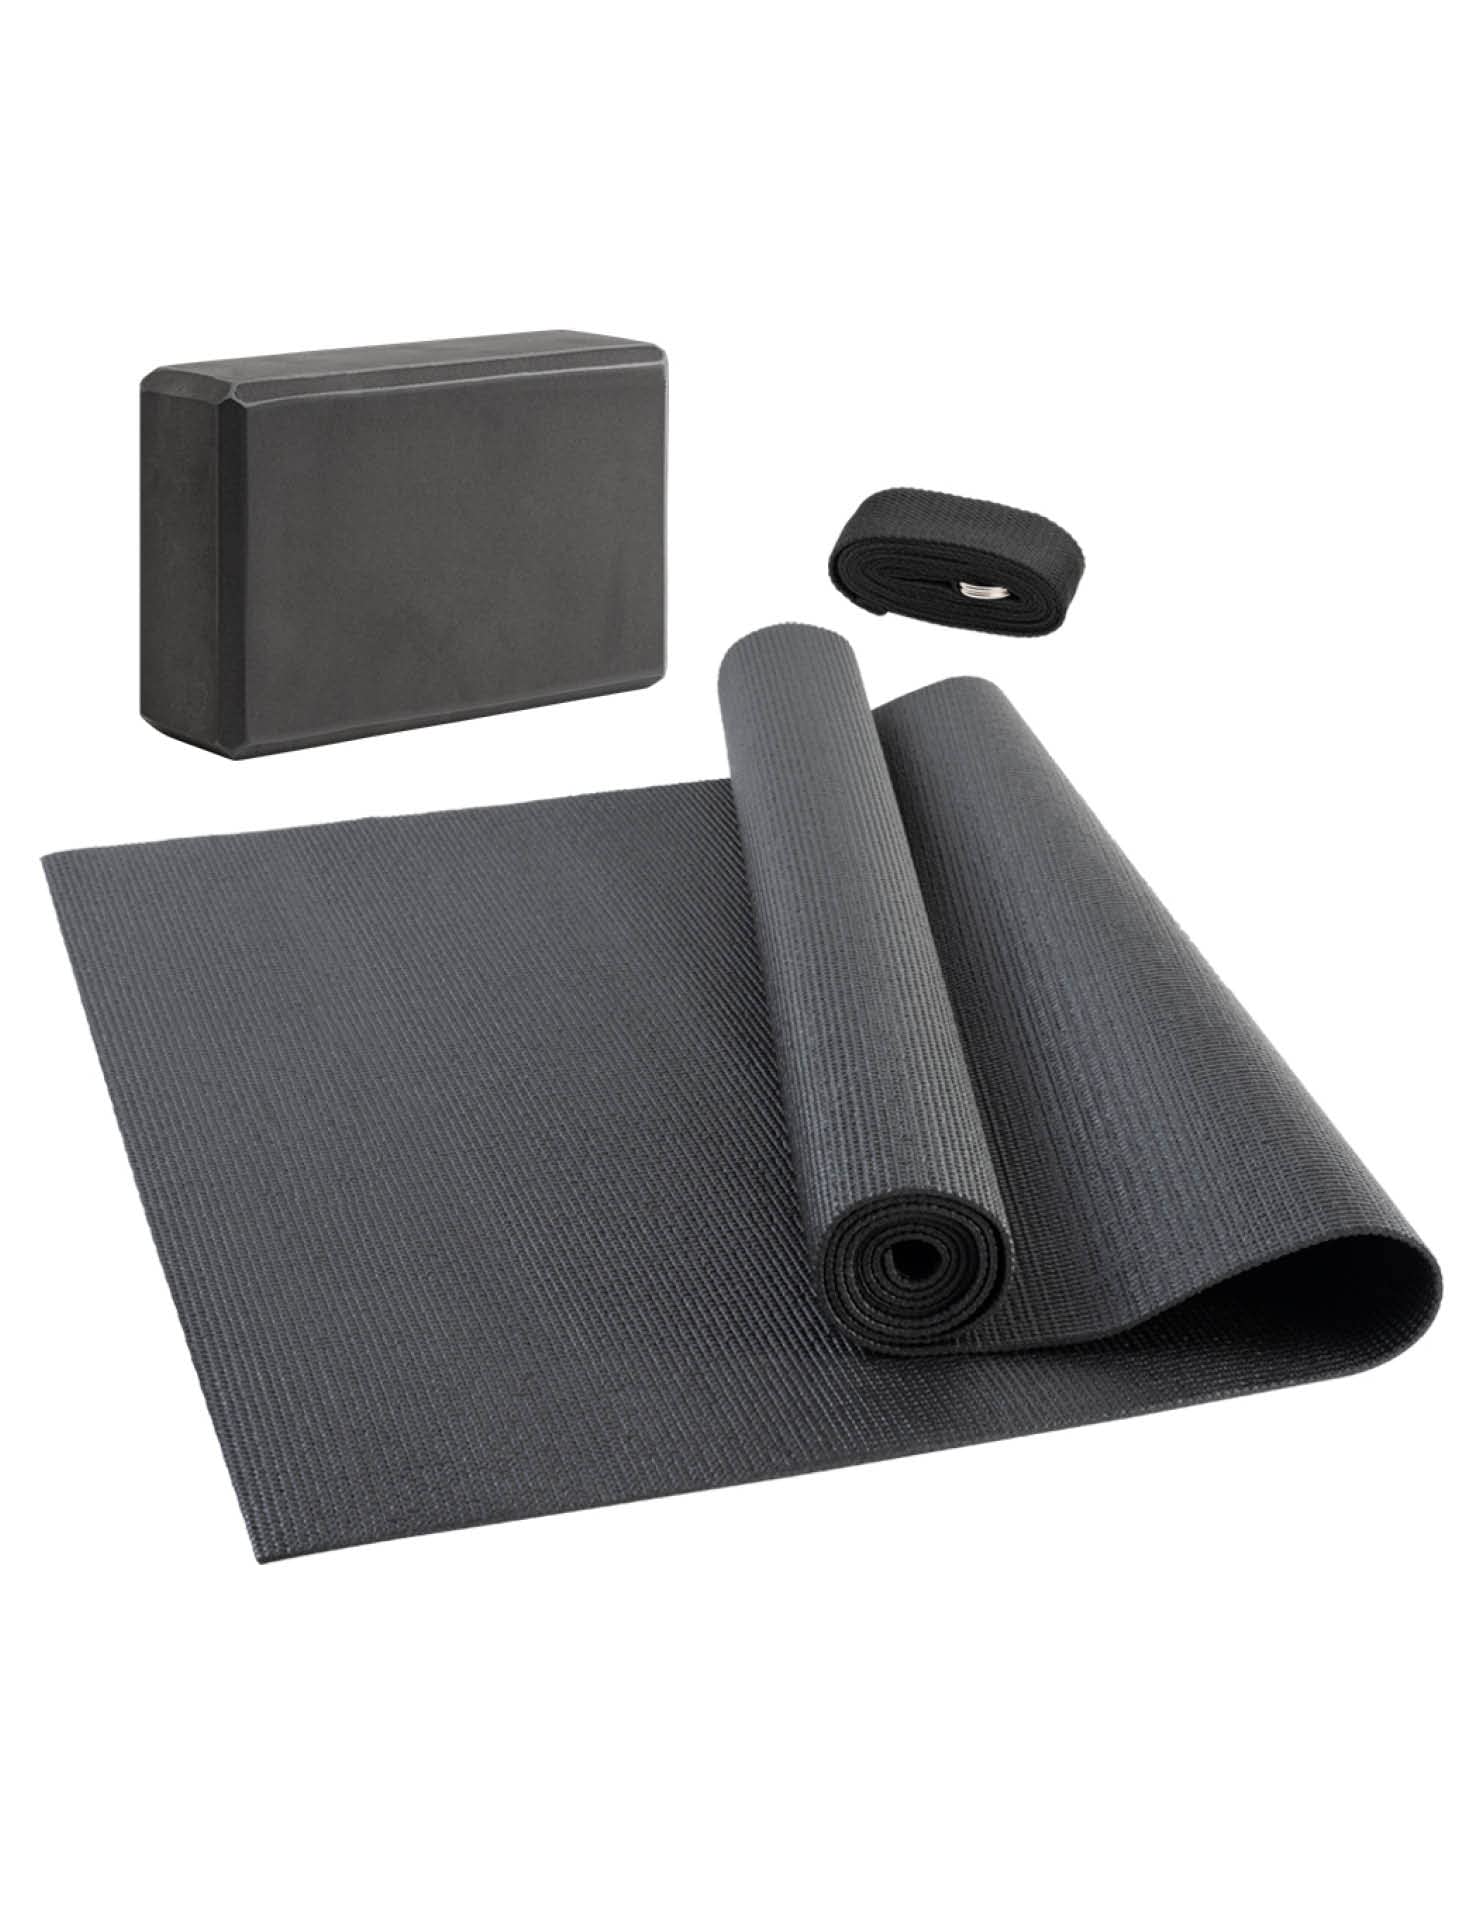 JELEX Yoga Set 3-TLG. Yogagurt, rutschfeste Yogamatte (173 x 61 cm) und formstabiler Block. Praktisches Set für Anfänger und Erfahrene, Dehnübungen, Entspannung, Fitness, grau